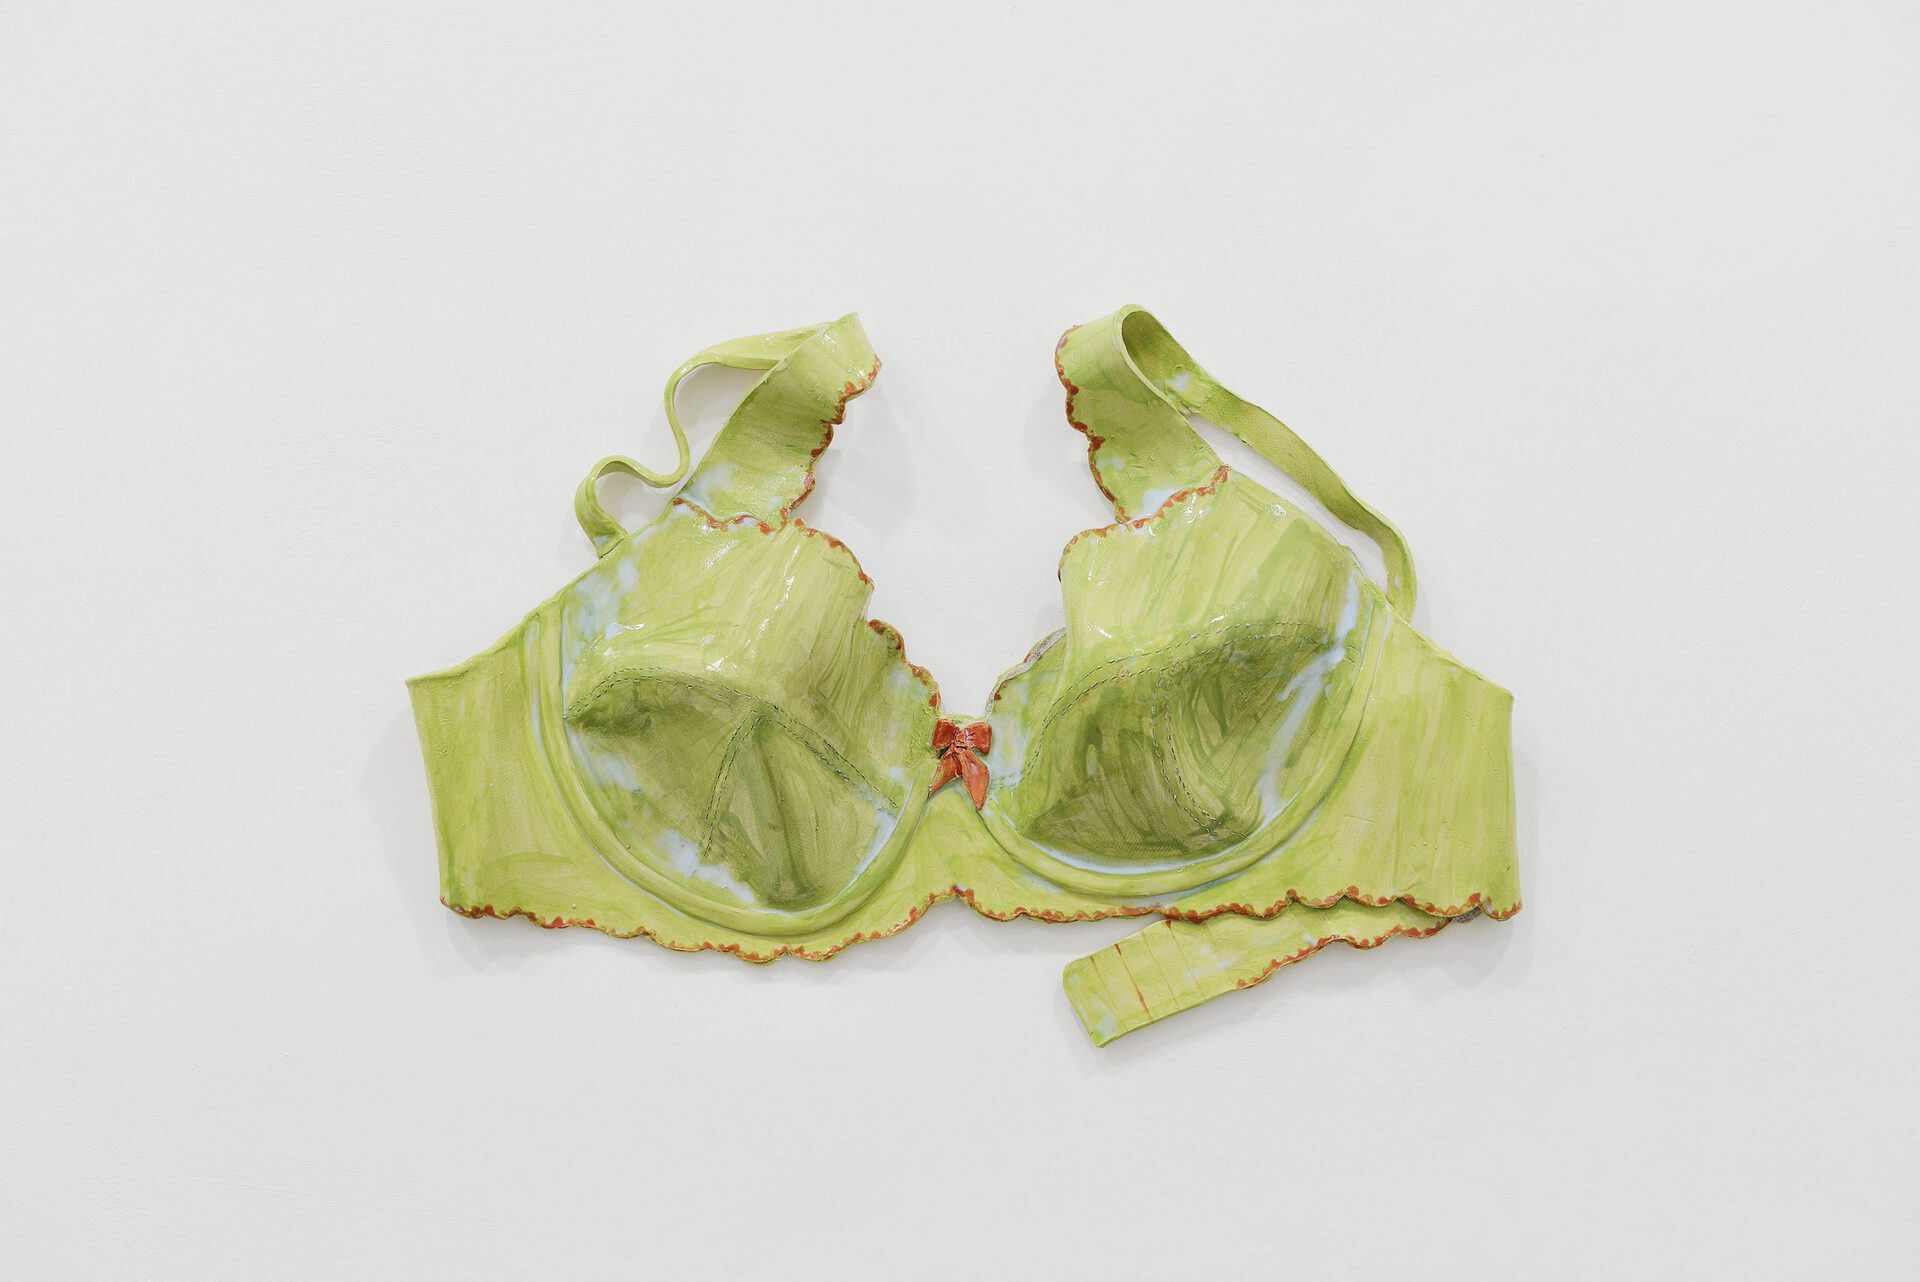 19. Green bra, 2020 glazed ceramic 30 x 32 x 14 cm